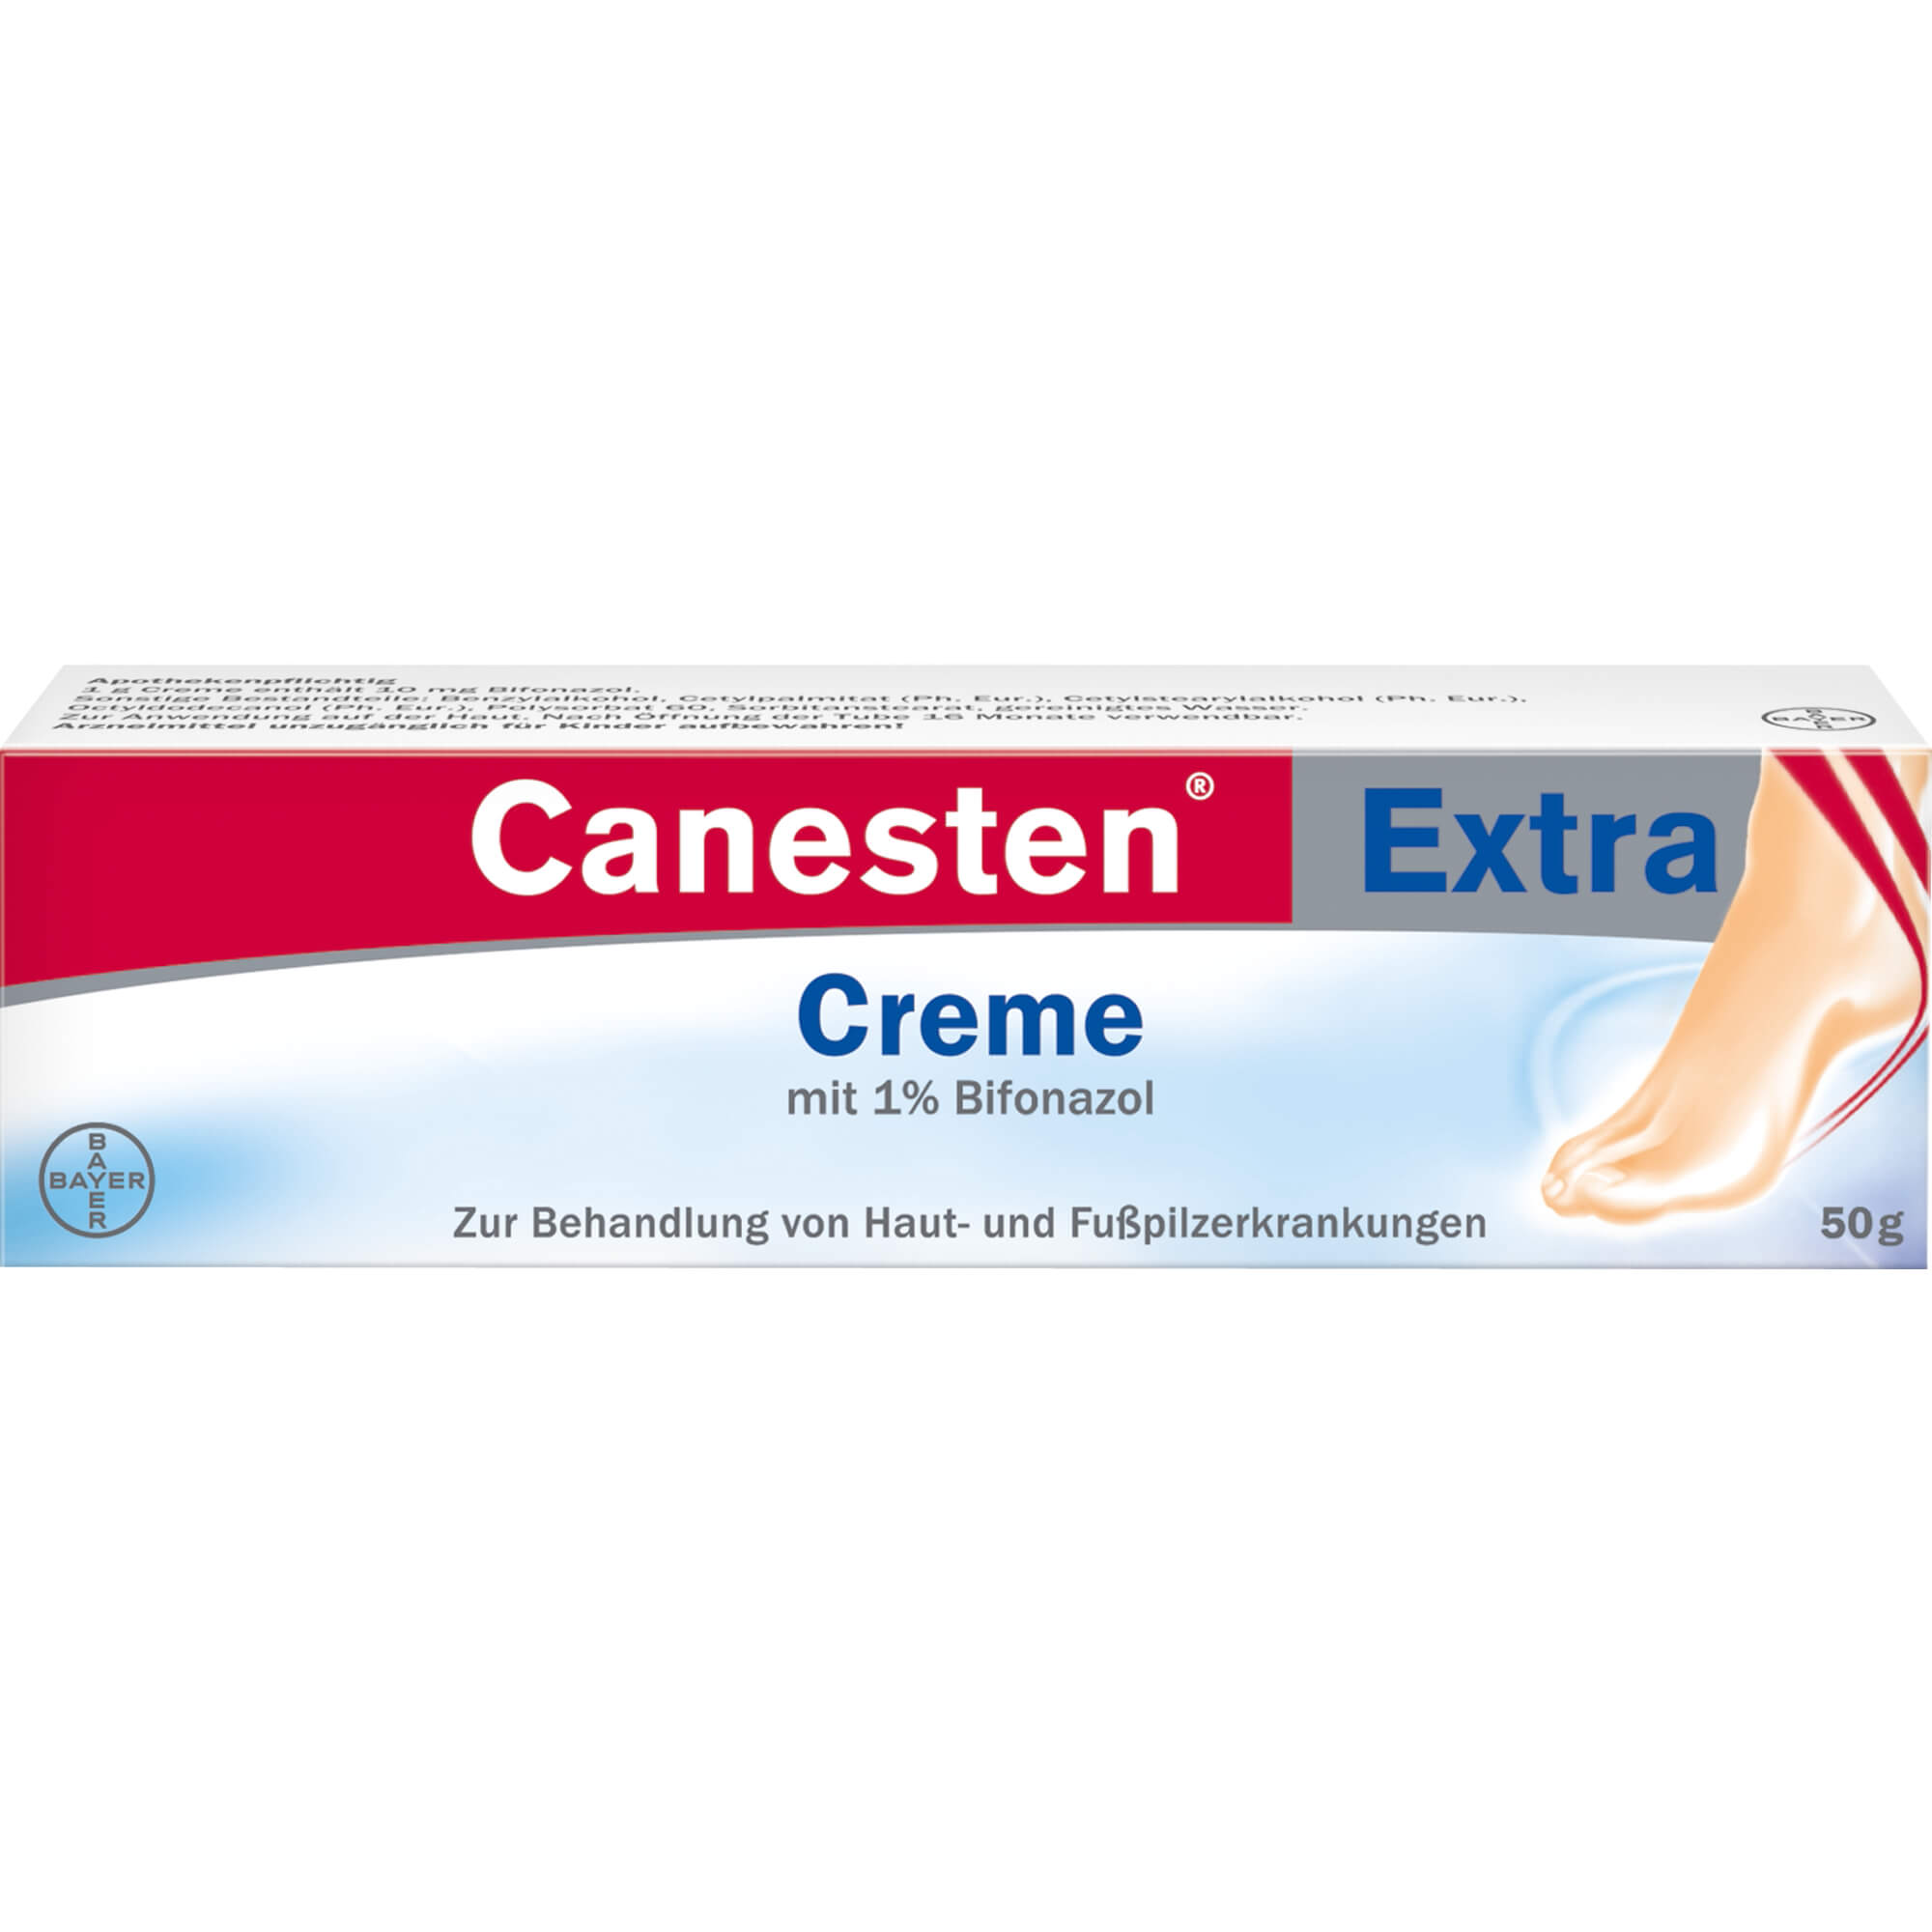 CANESTEN Extra Creme 10 mg/g - 50 g - 24,0 EUR - 00679629 - Meine